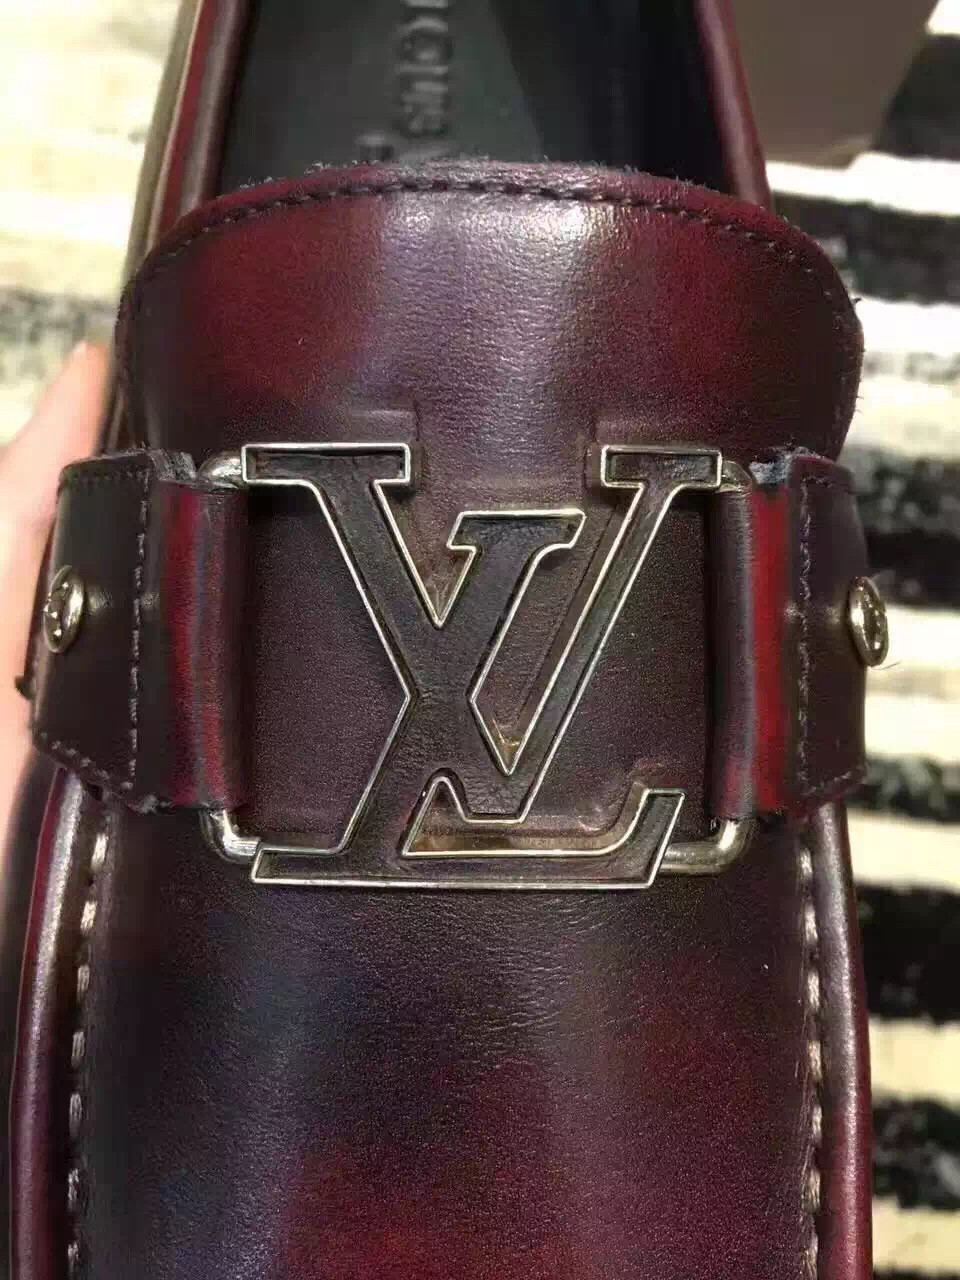 Giày lười nam Louis Vuitton siêu cấp - GNLV014